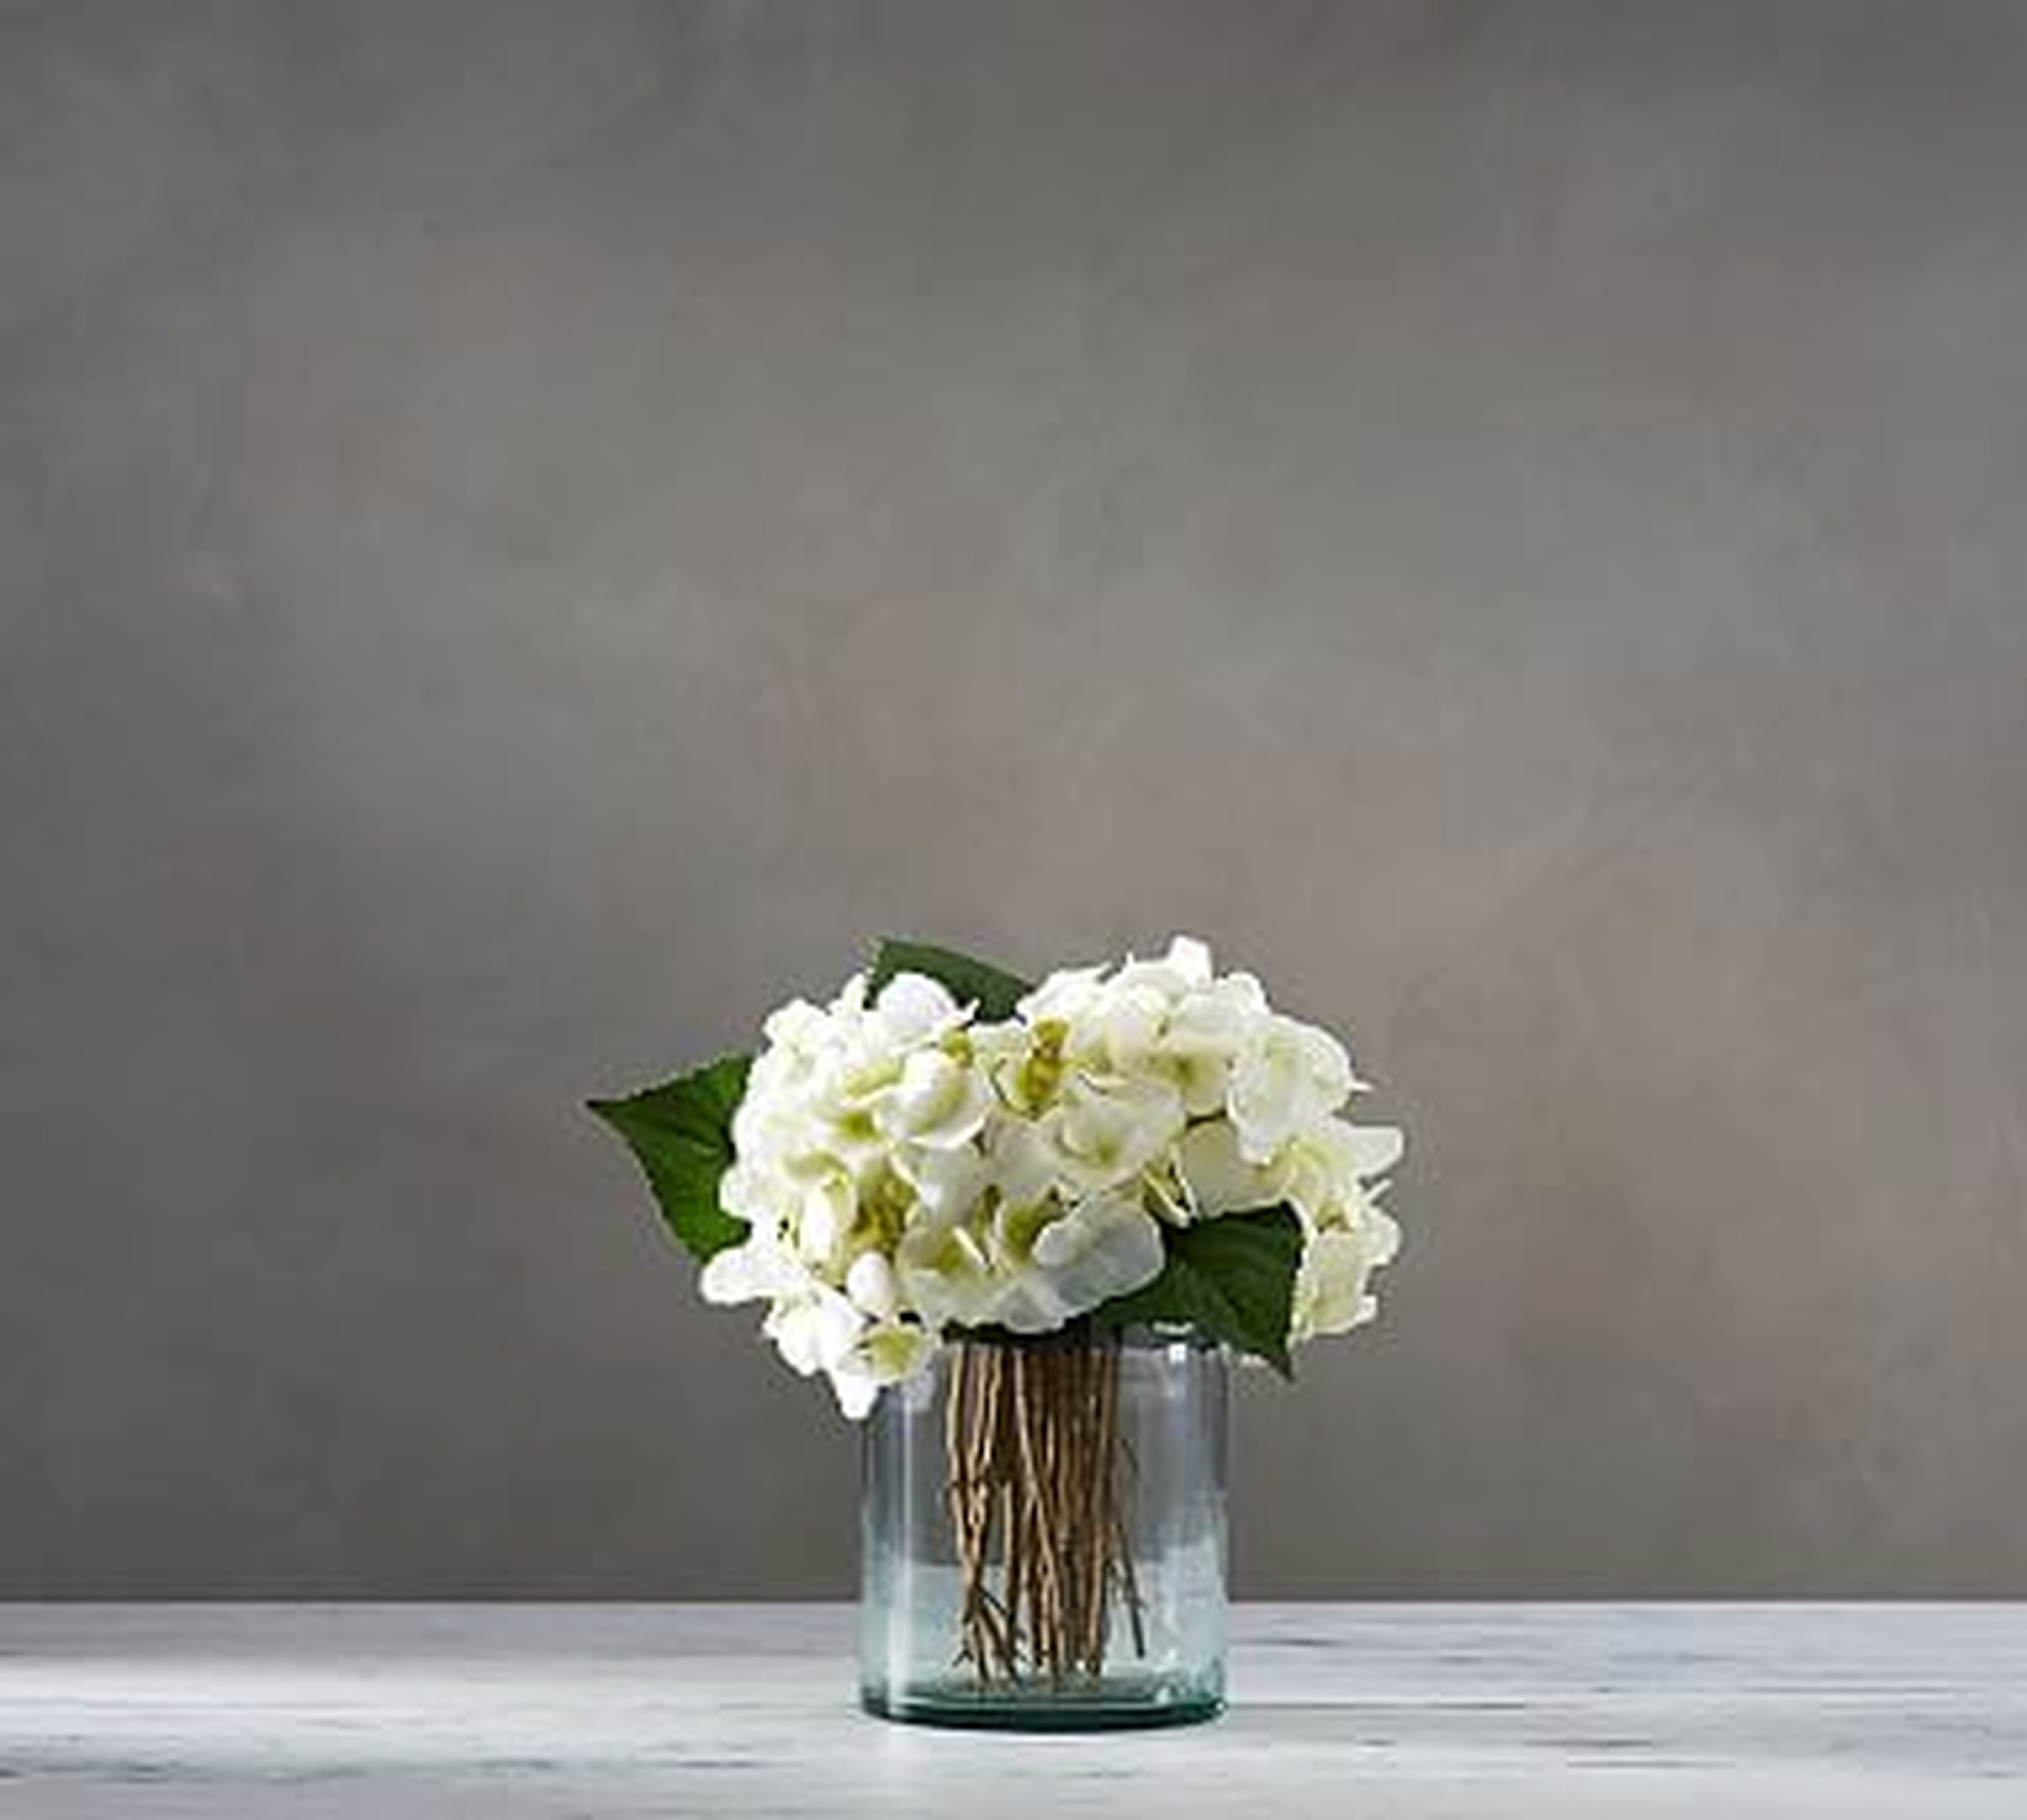 Faux White Hydrangea Arrangement in Glass Vase - Pottery Barn